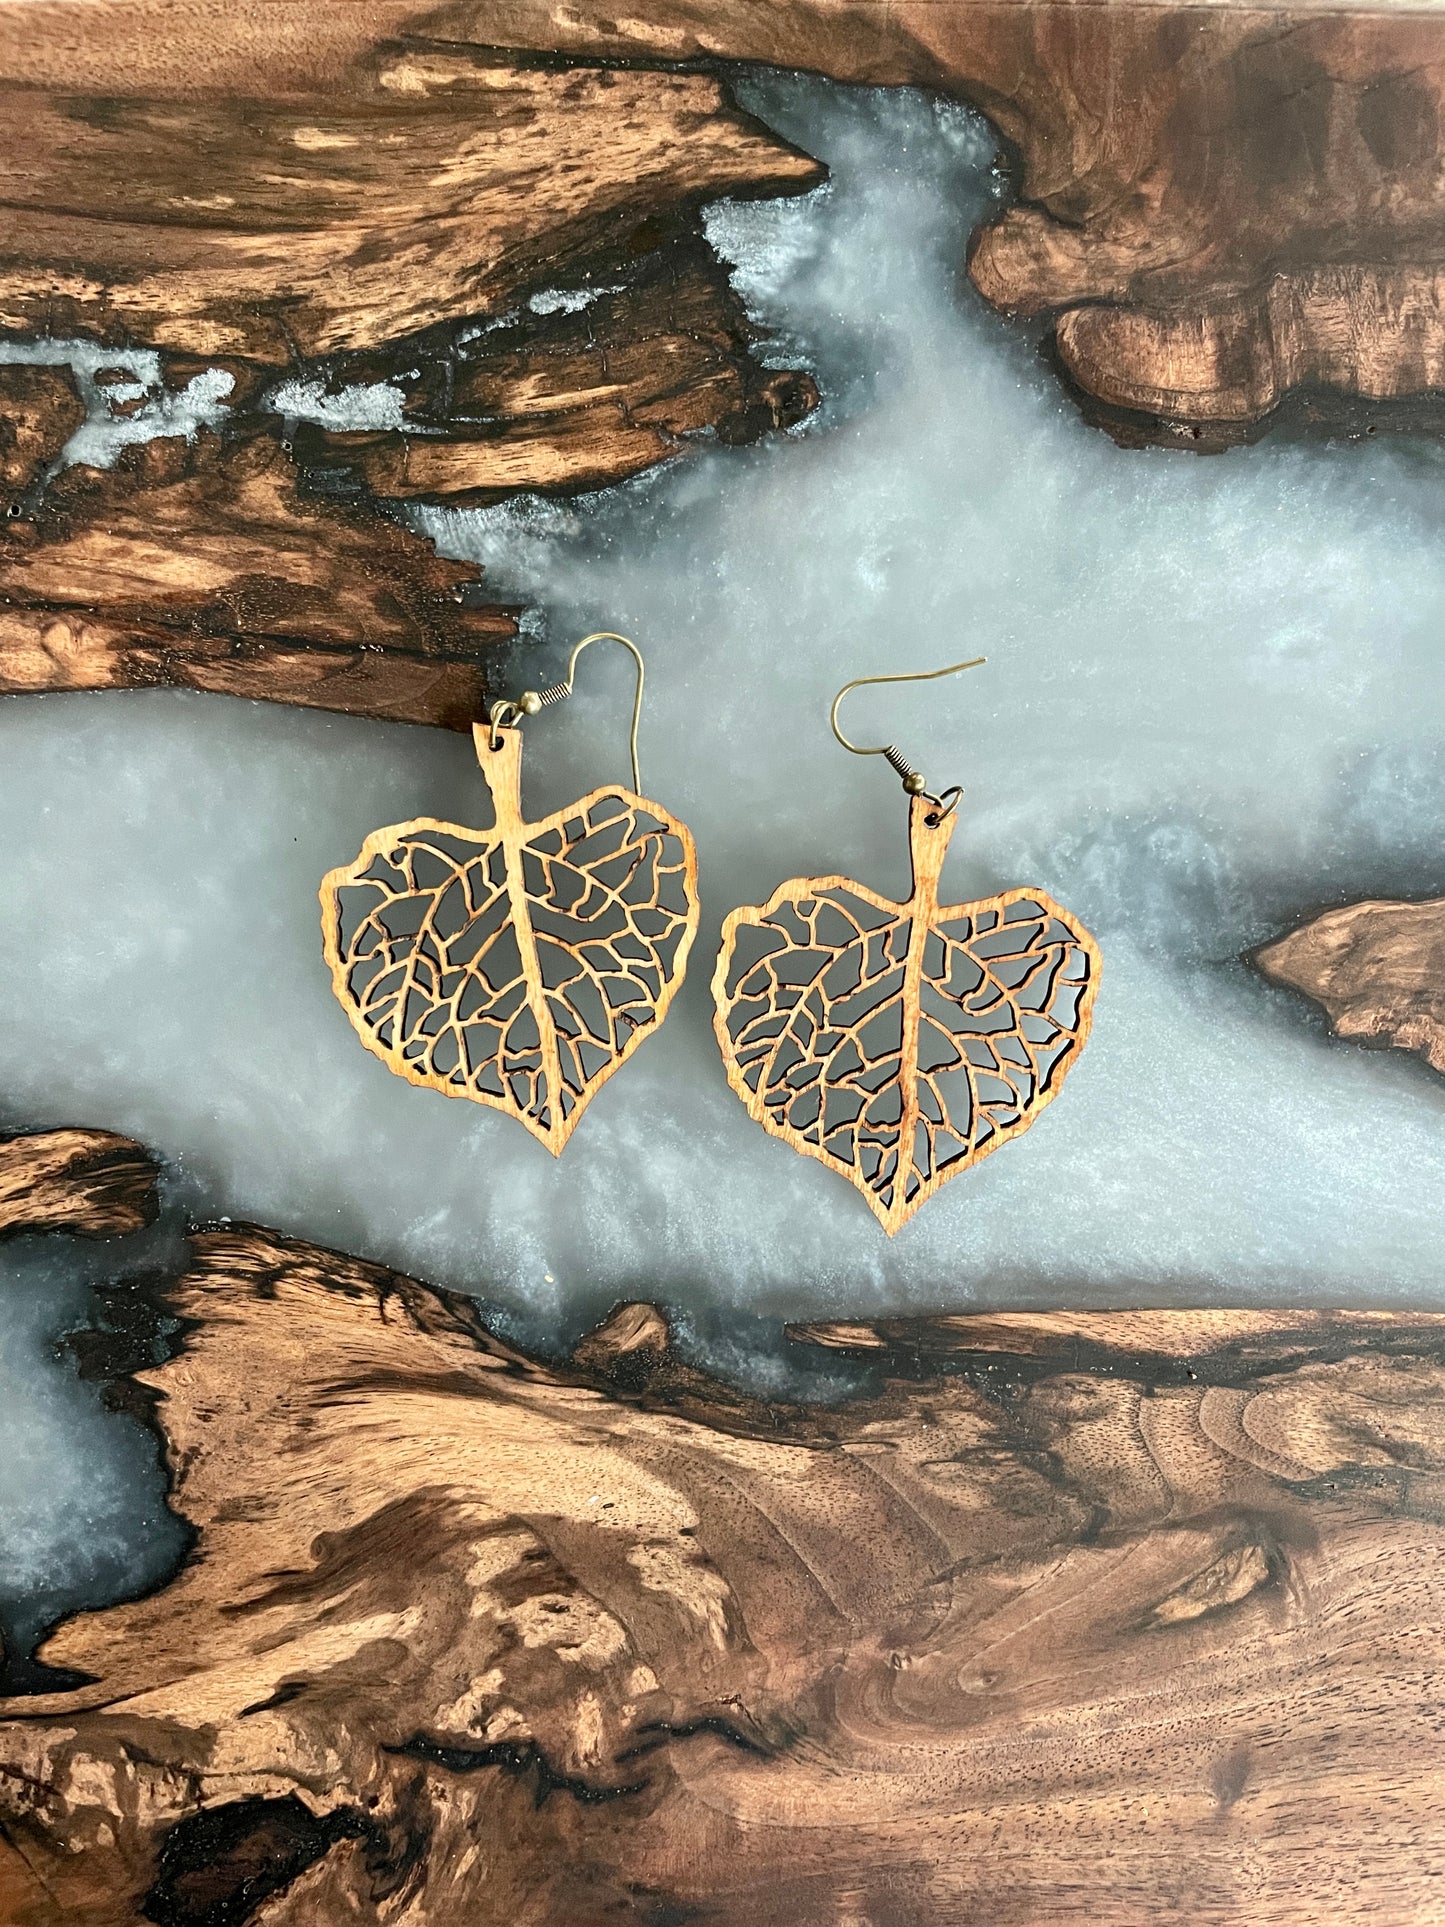 Aspen leaf earrings